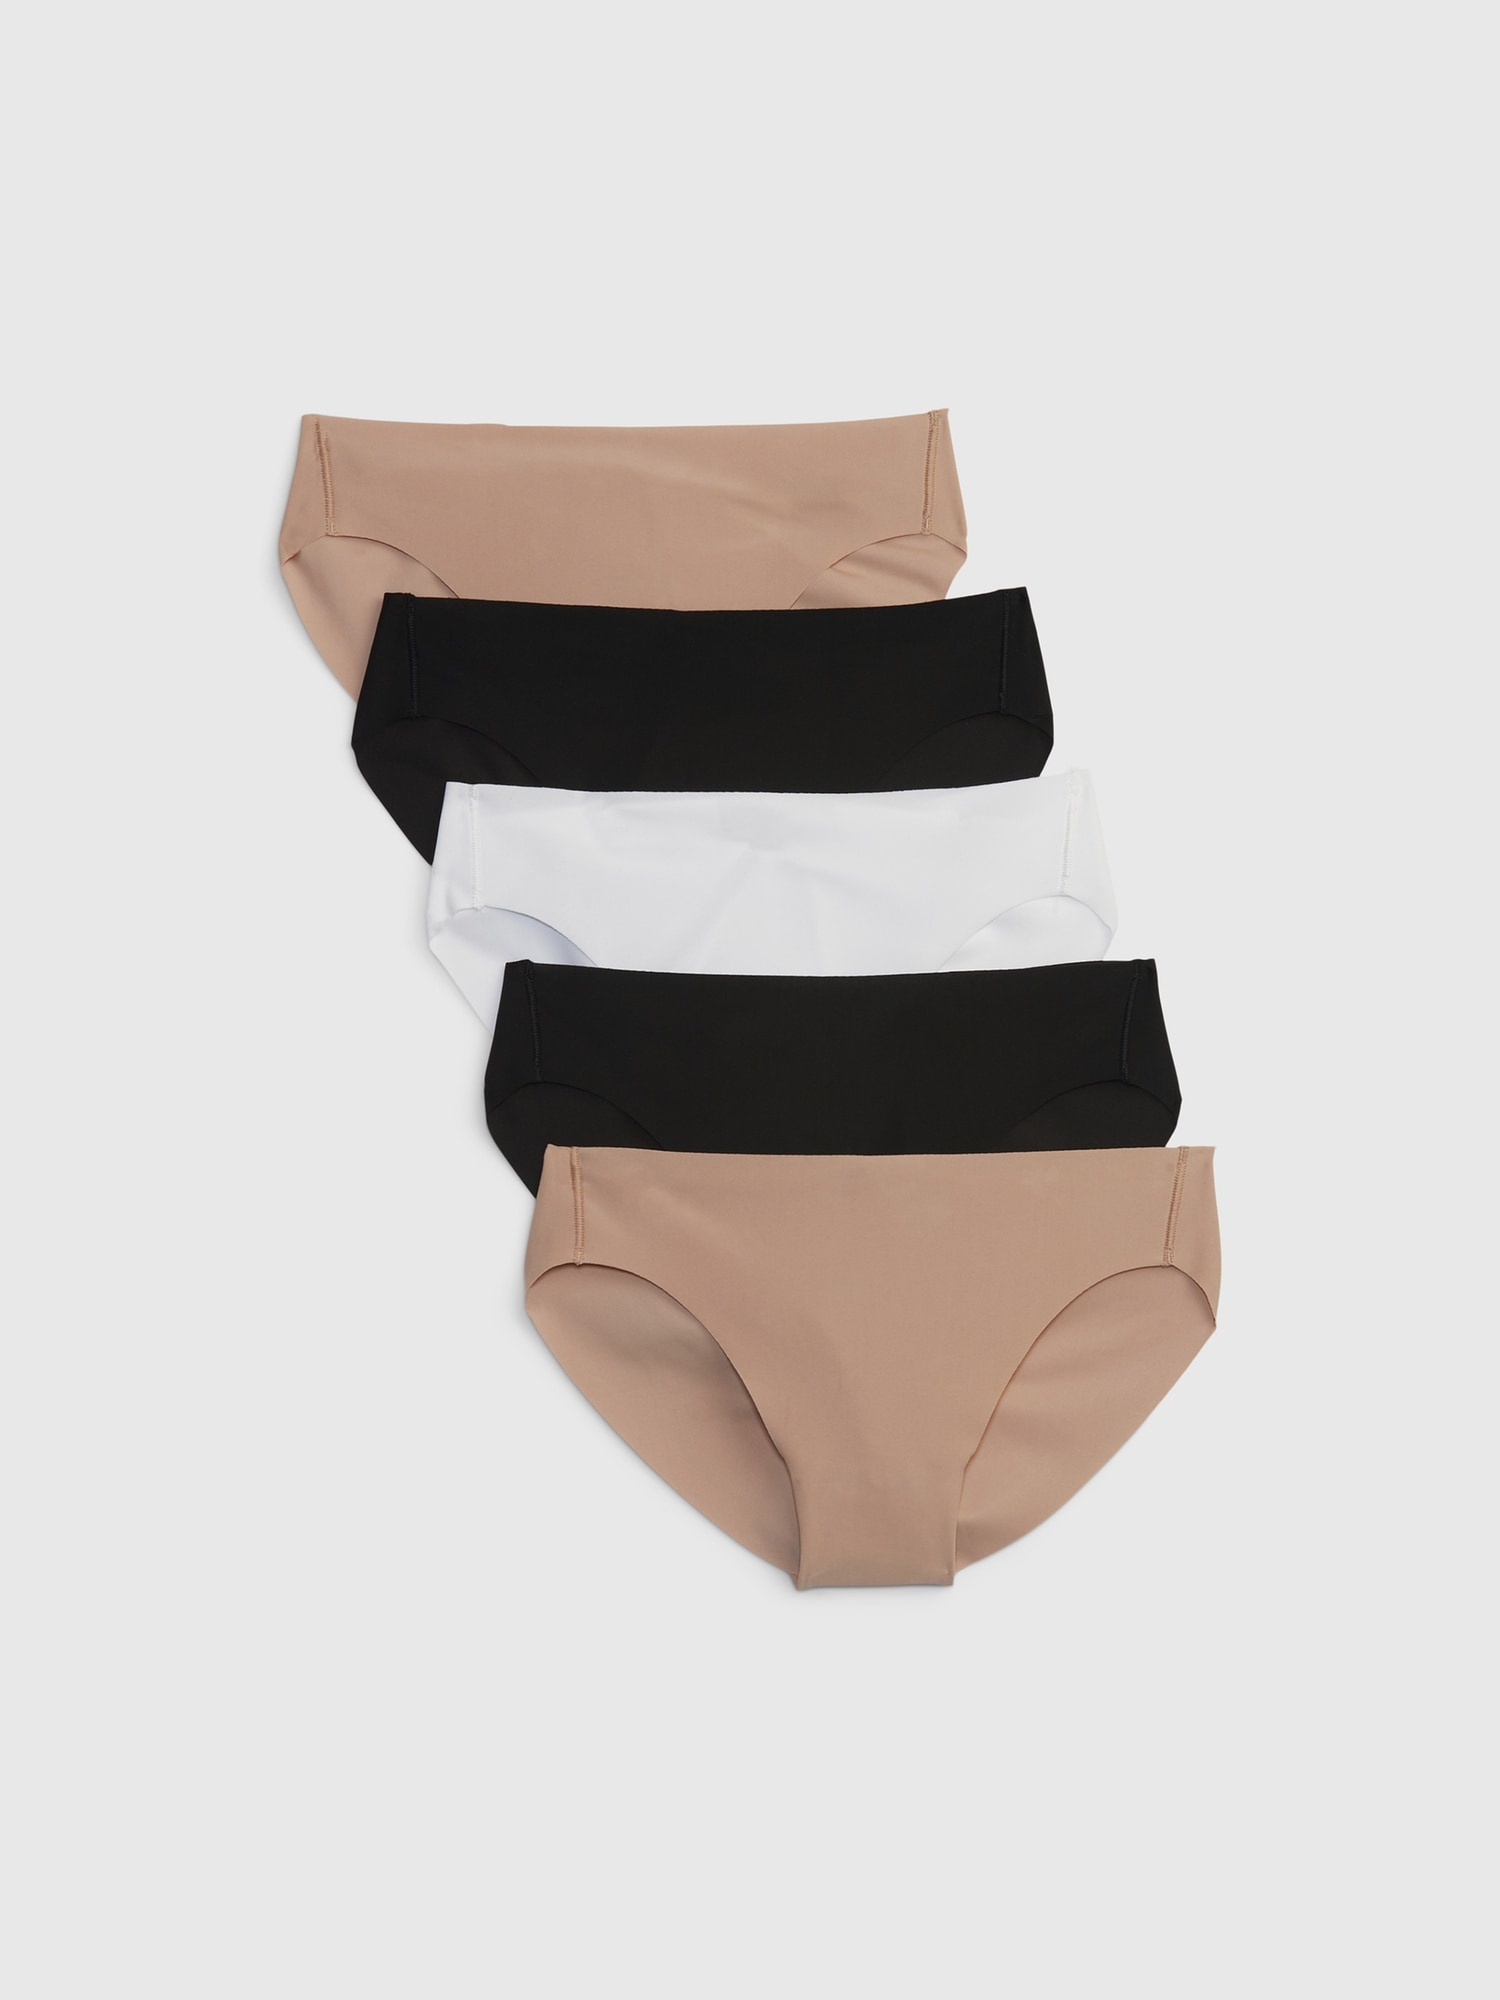 Buy 5-Pack No Show Bikini Underwear - Order Panties online 1120595400 -  PINK US